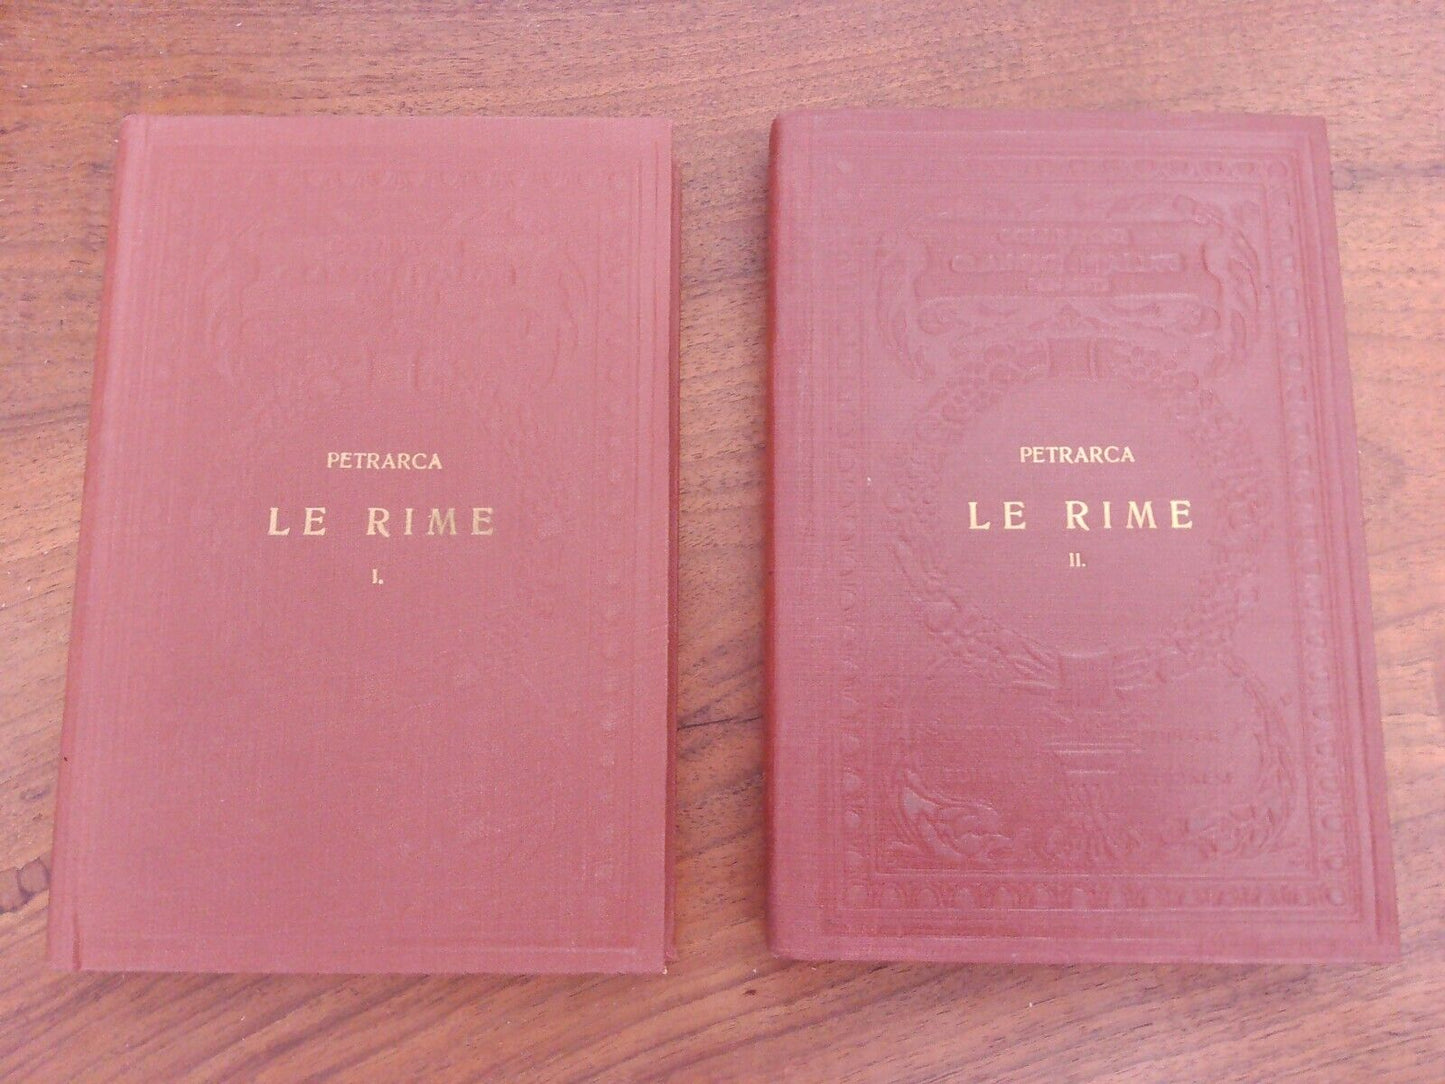 Le Rime, F. Petrarca, vol.1-2, UTET 1929